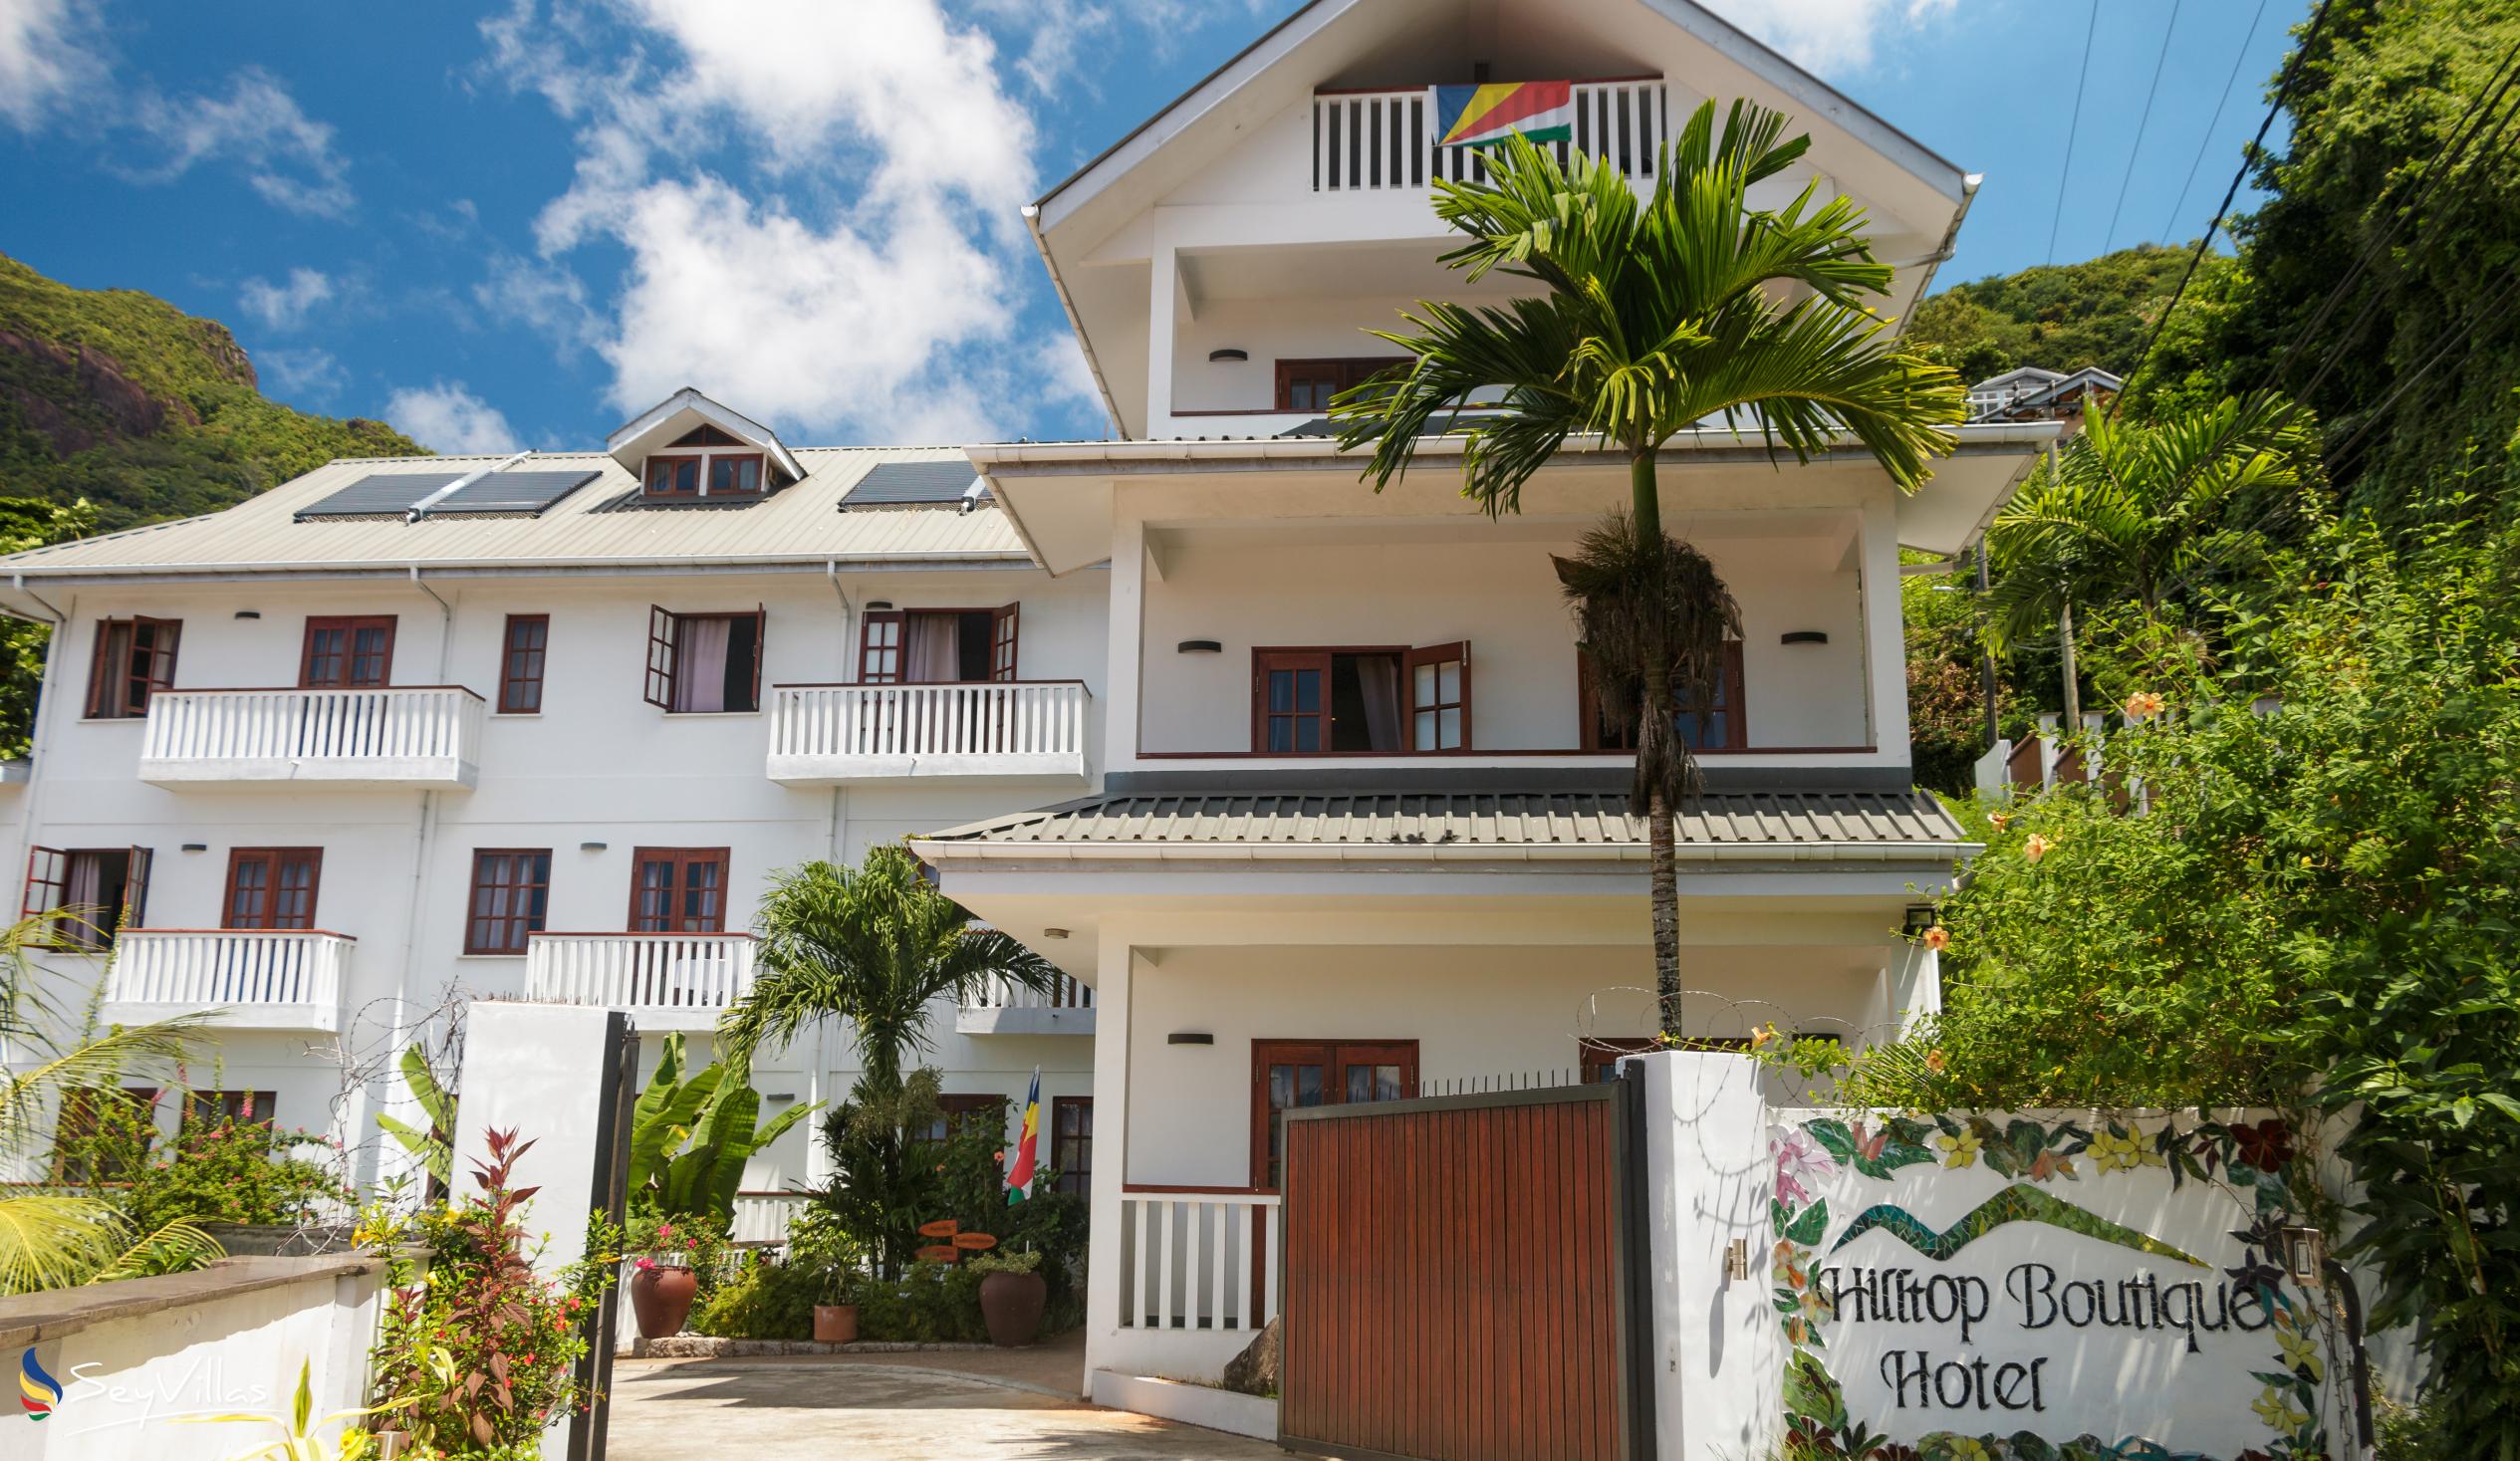 Foto 5: Hilltop Boutique Hotel - Extérieur - Mahé (Seychelles)